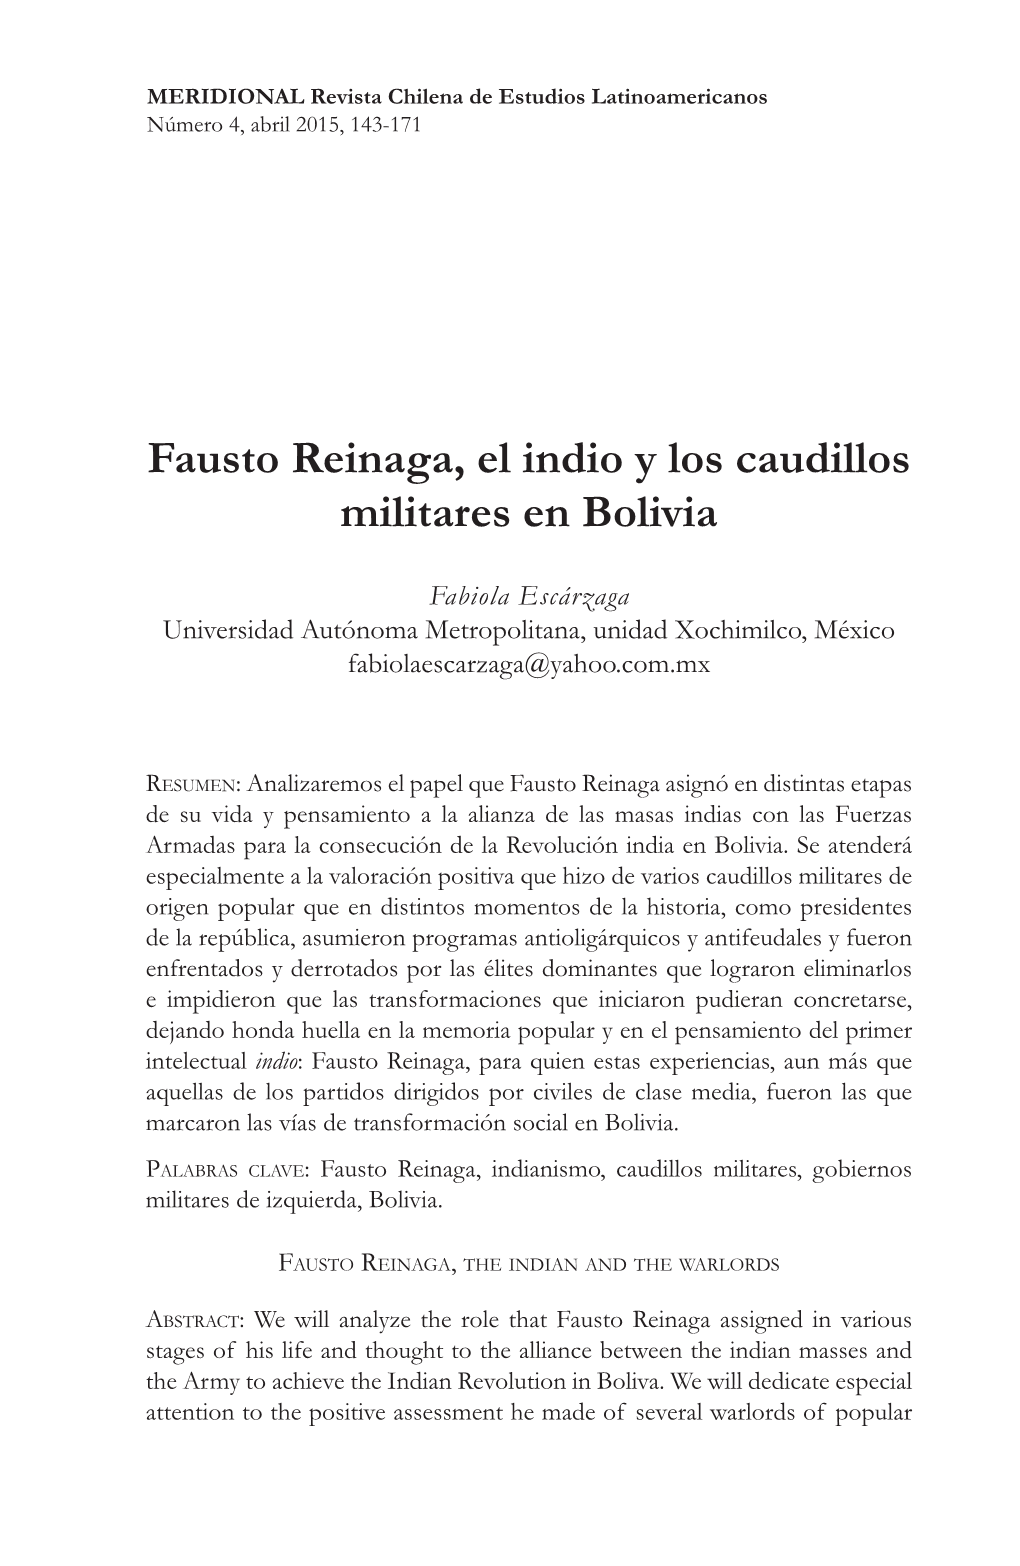 Fausto Reinaga, El Indio Y Los Caudillos Militares En Bolivia